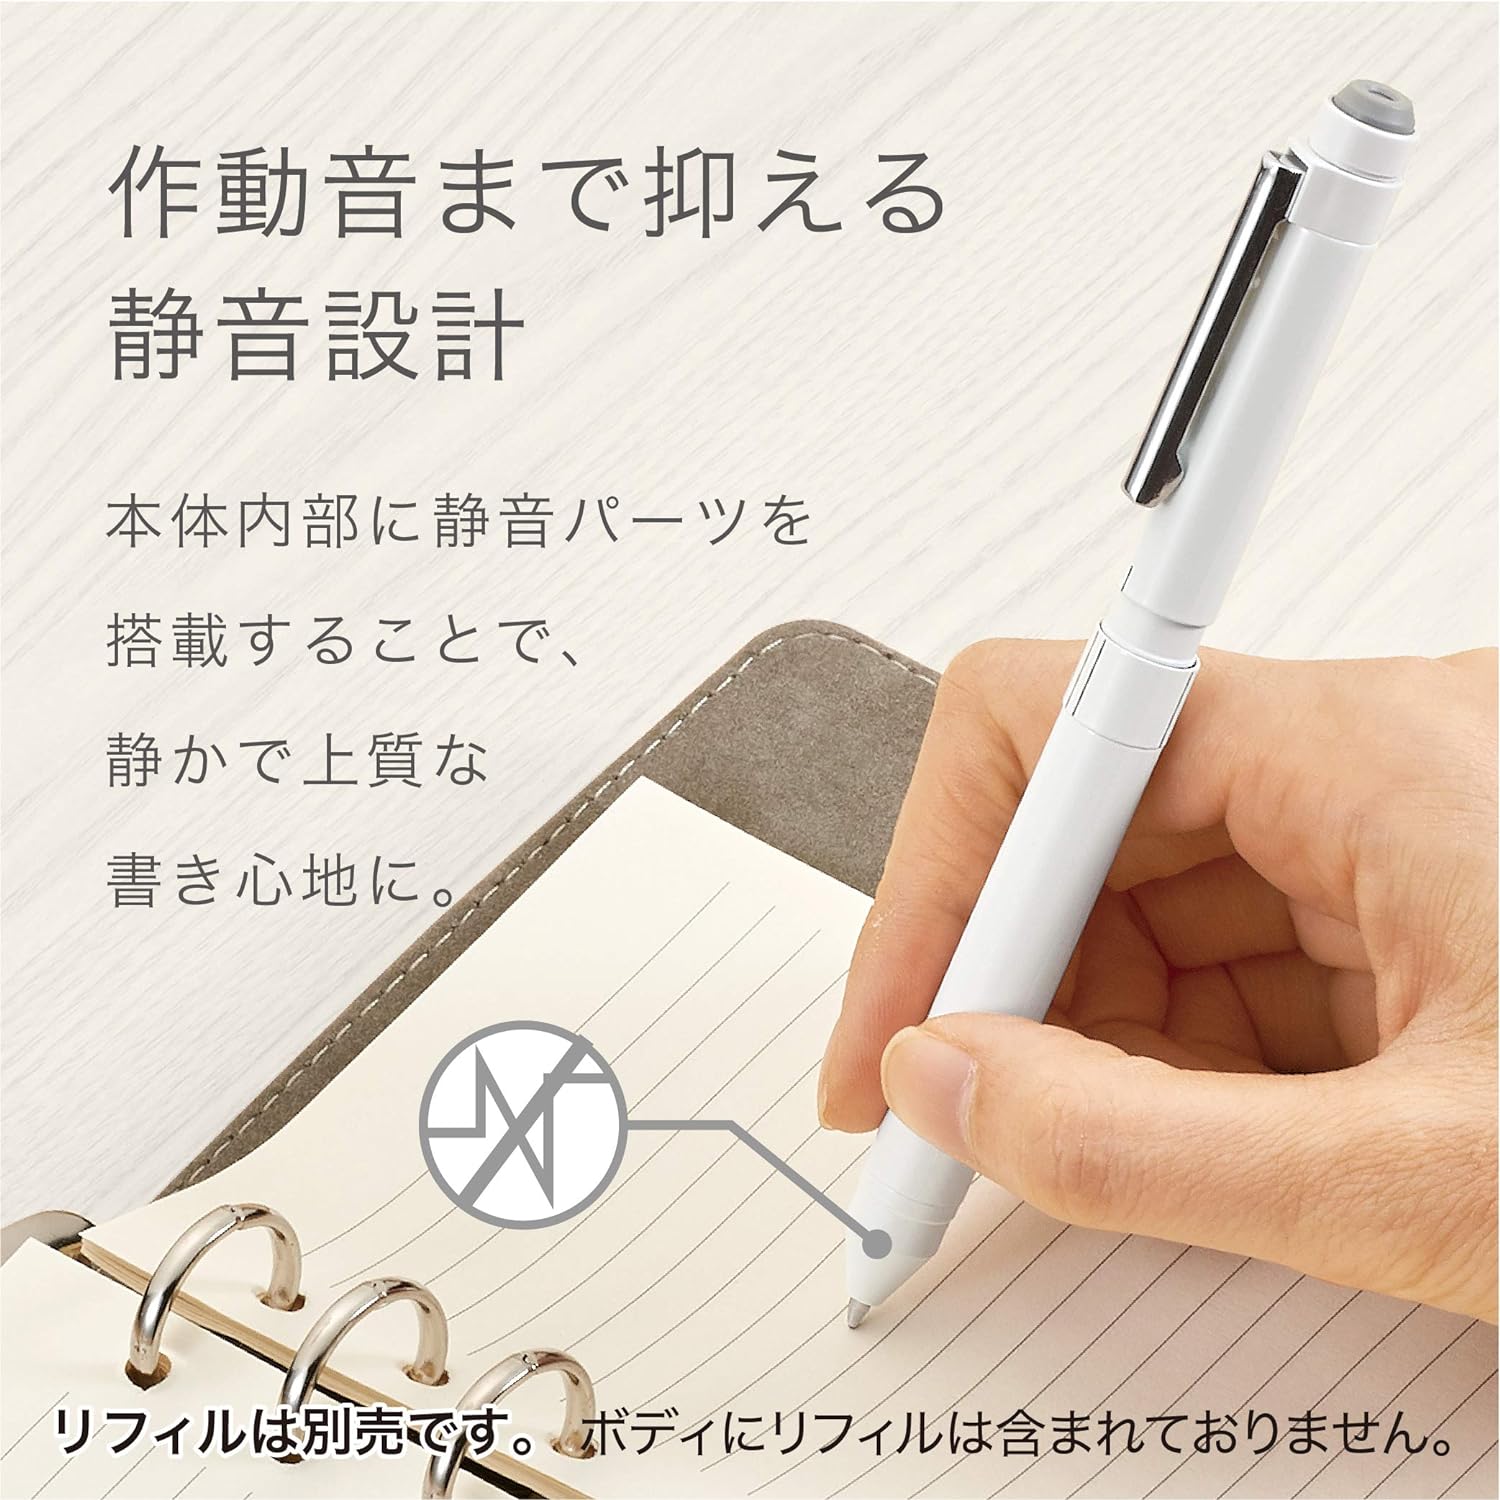 Zebra Sharbo X ST3 Multi-Functional Pen